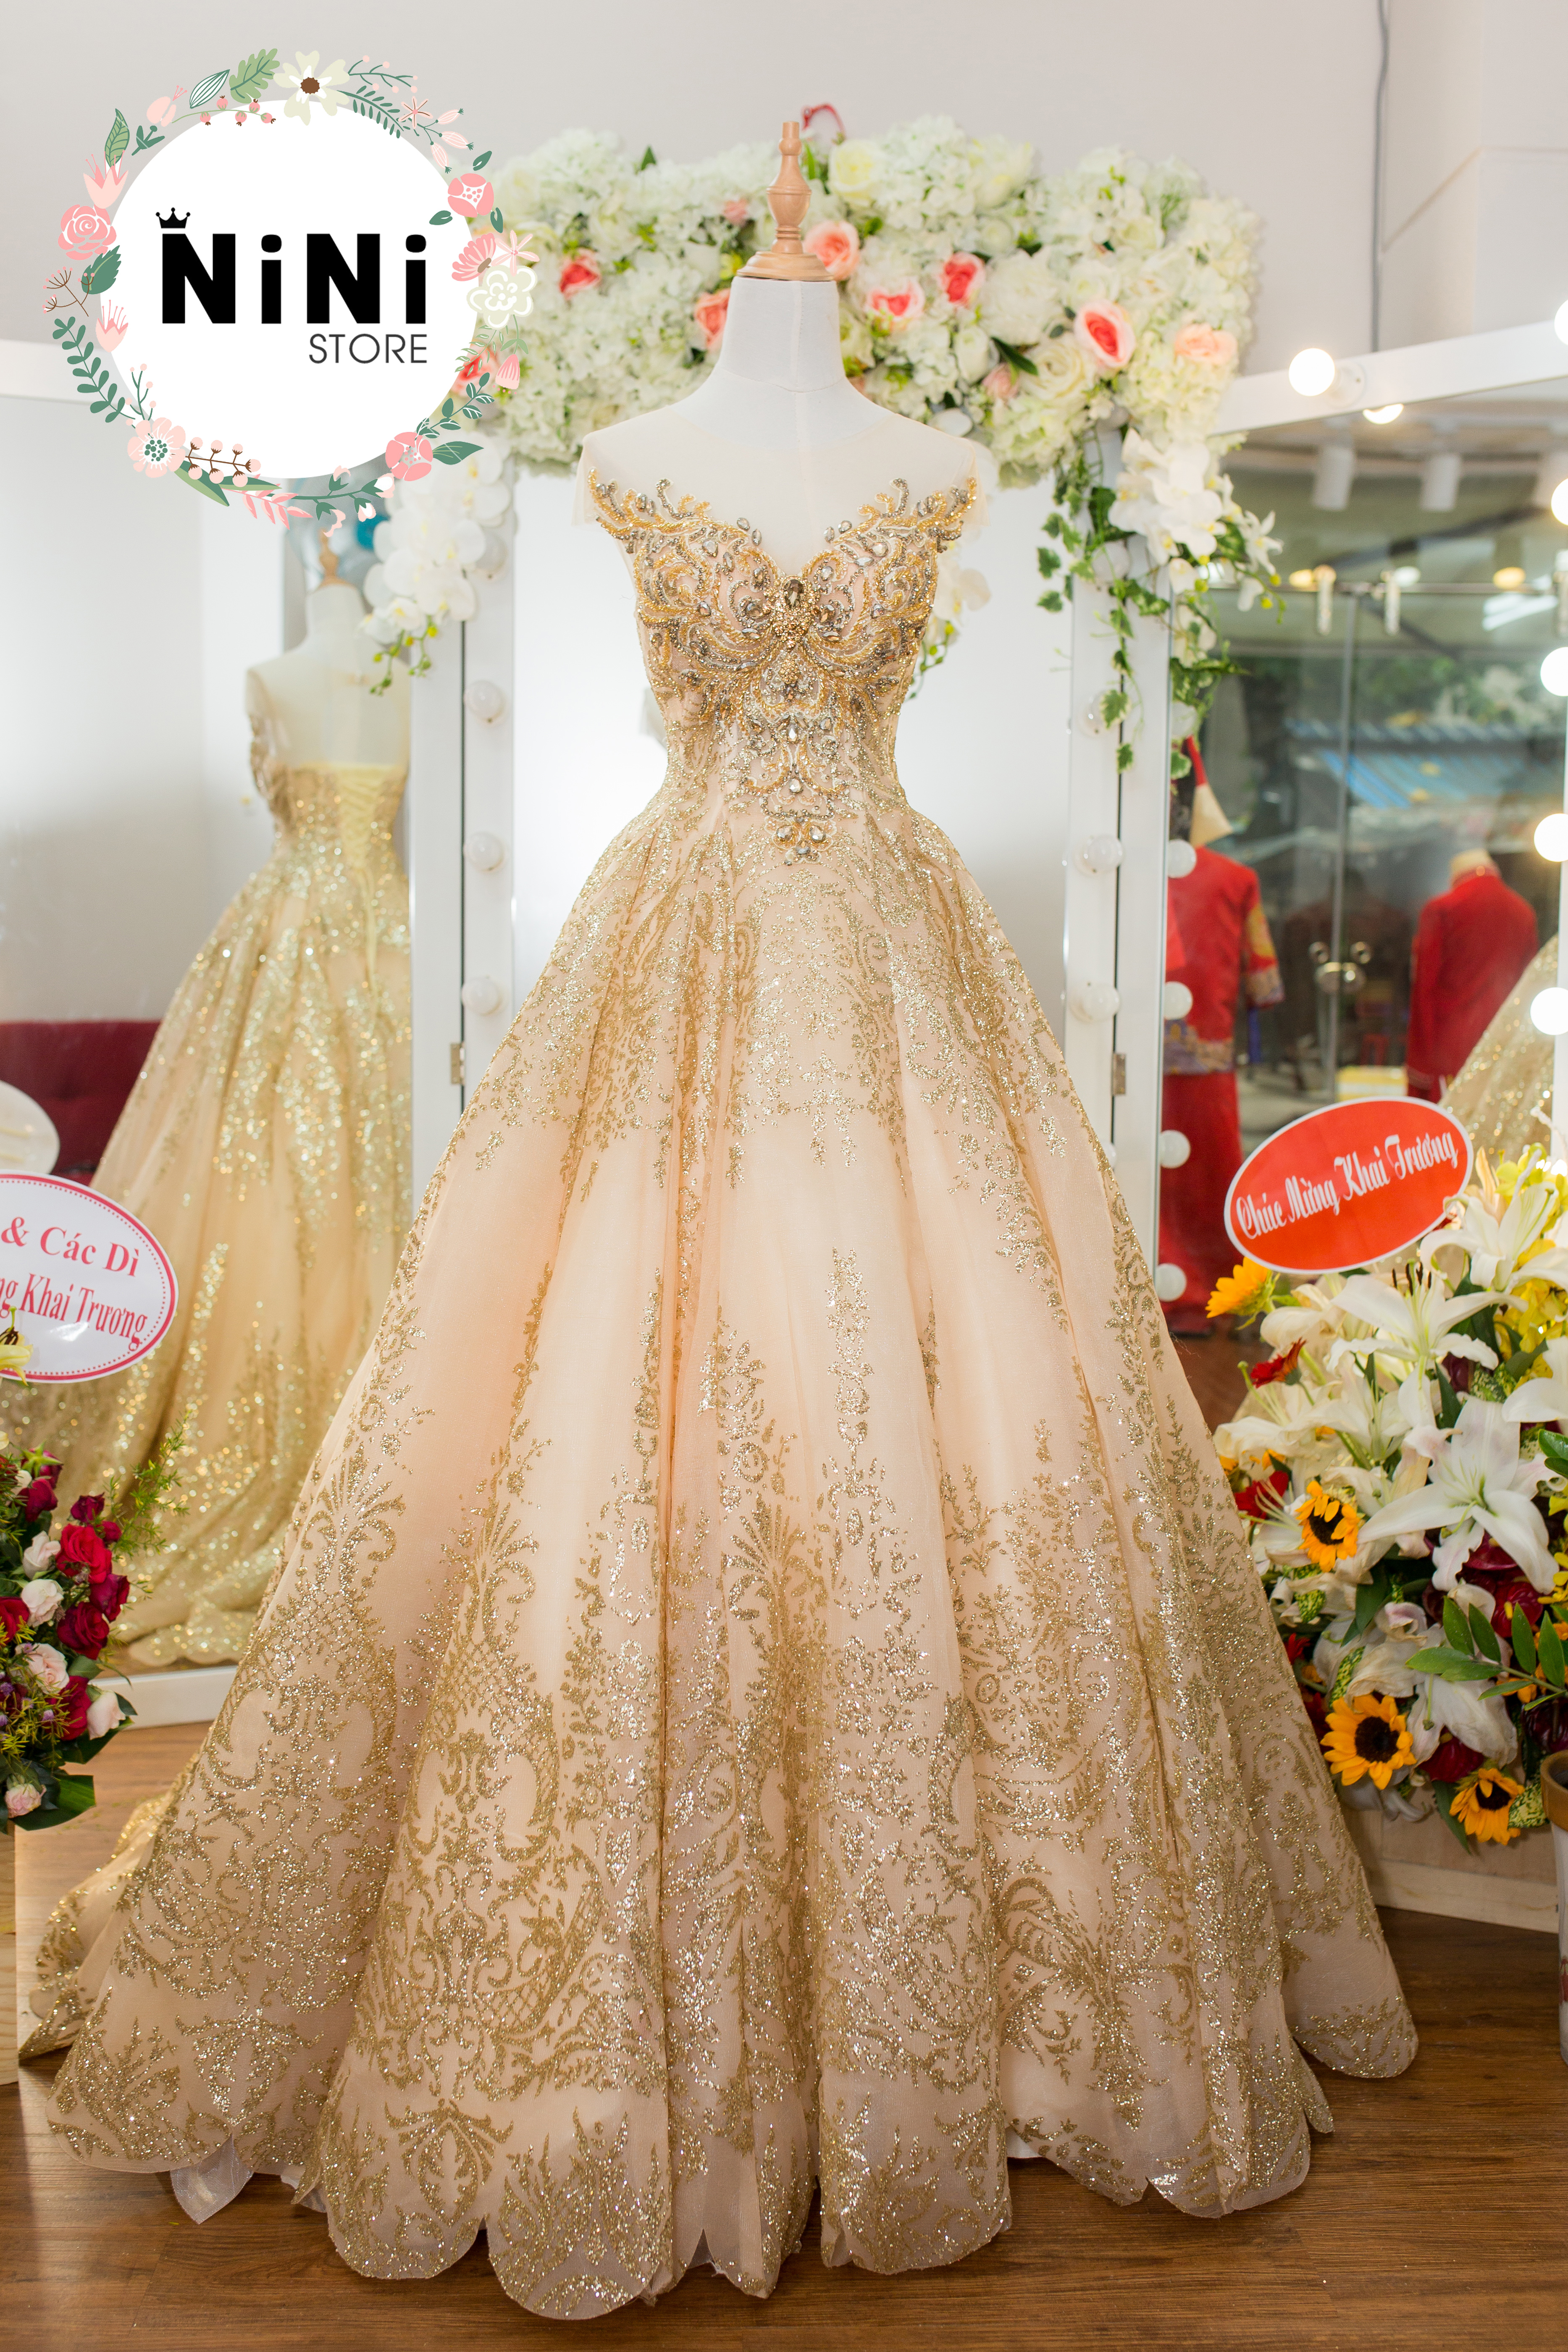 Hiện đại với váy cưới vàng ánh kim  PHƯƠNGs bridal